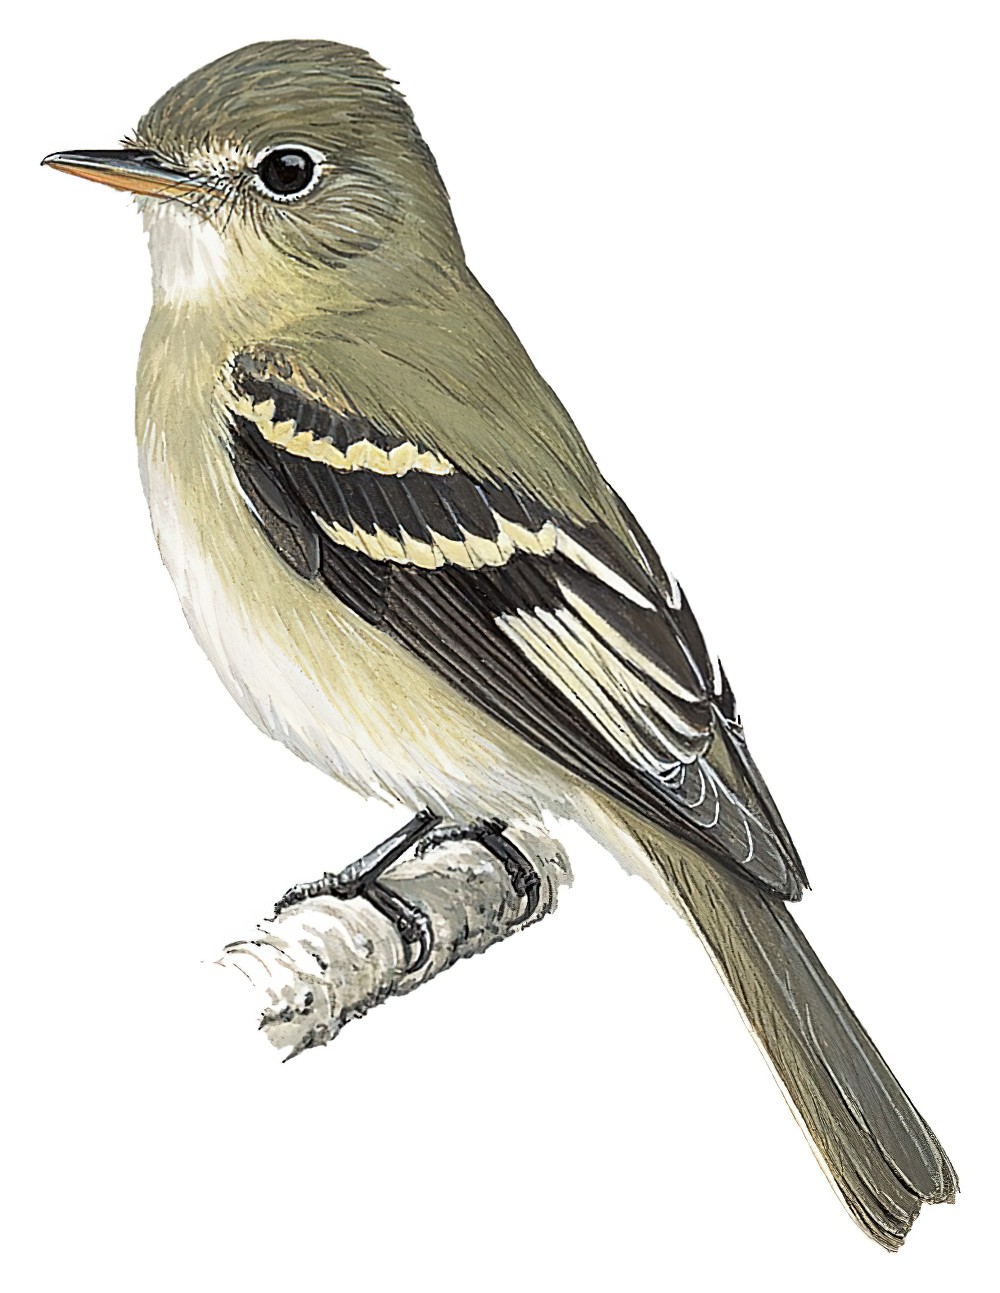 Acadian Flycatcher / Empidonax virescens